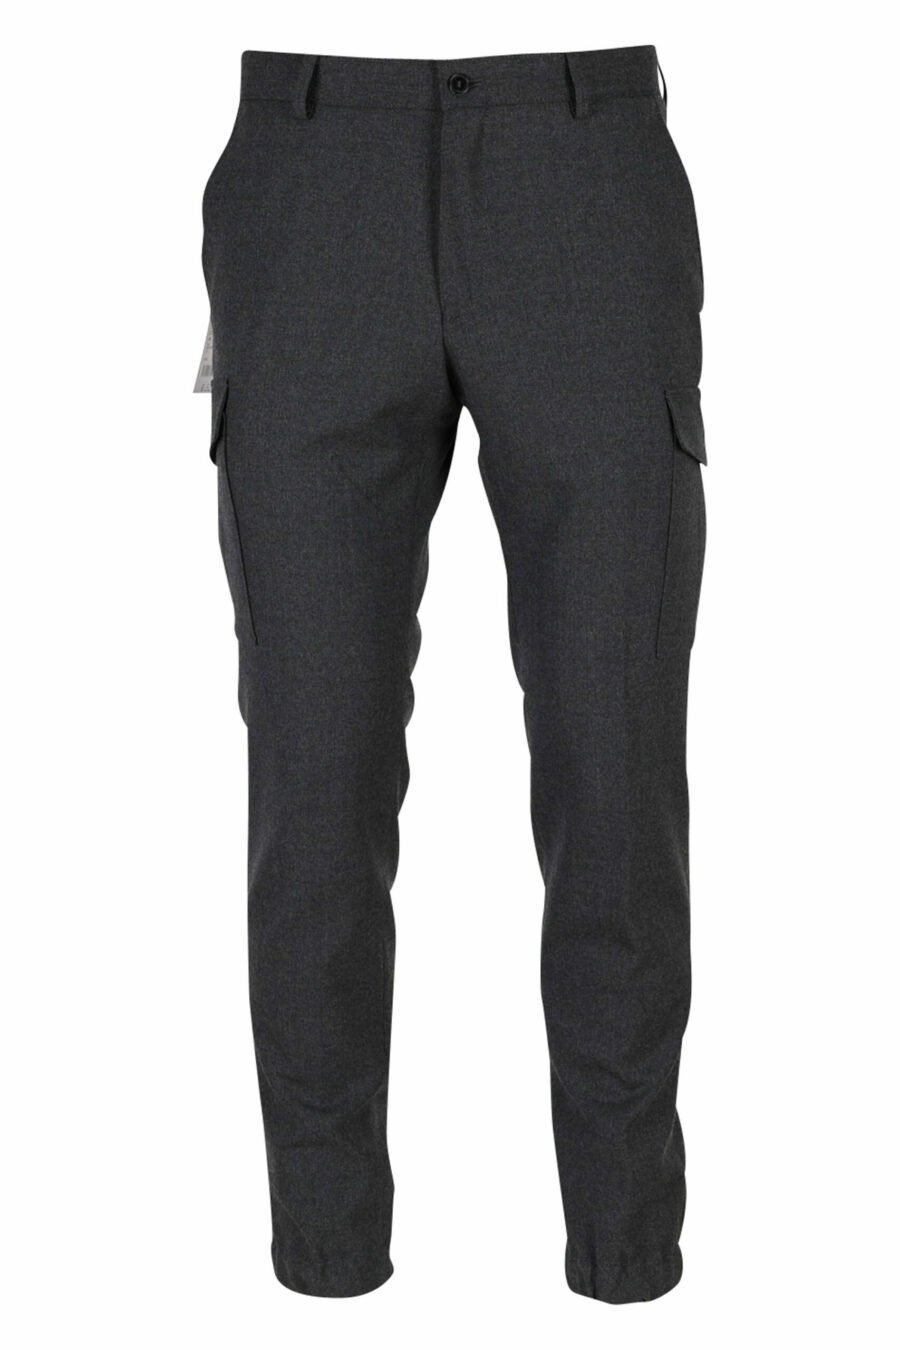 Pantalon de costume gris - 4062226397018 12 échelle